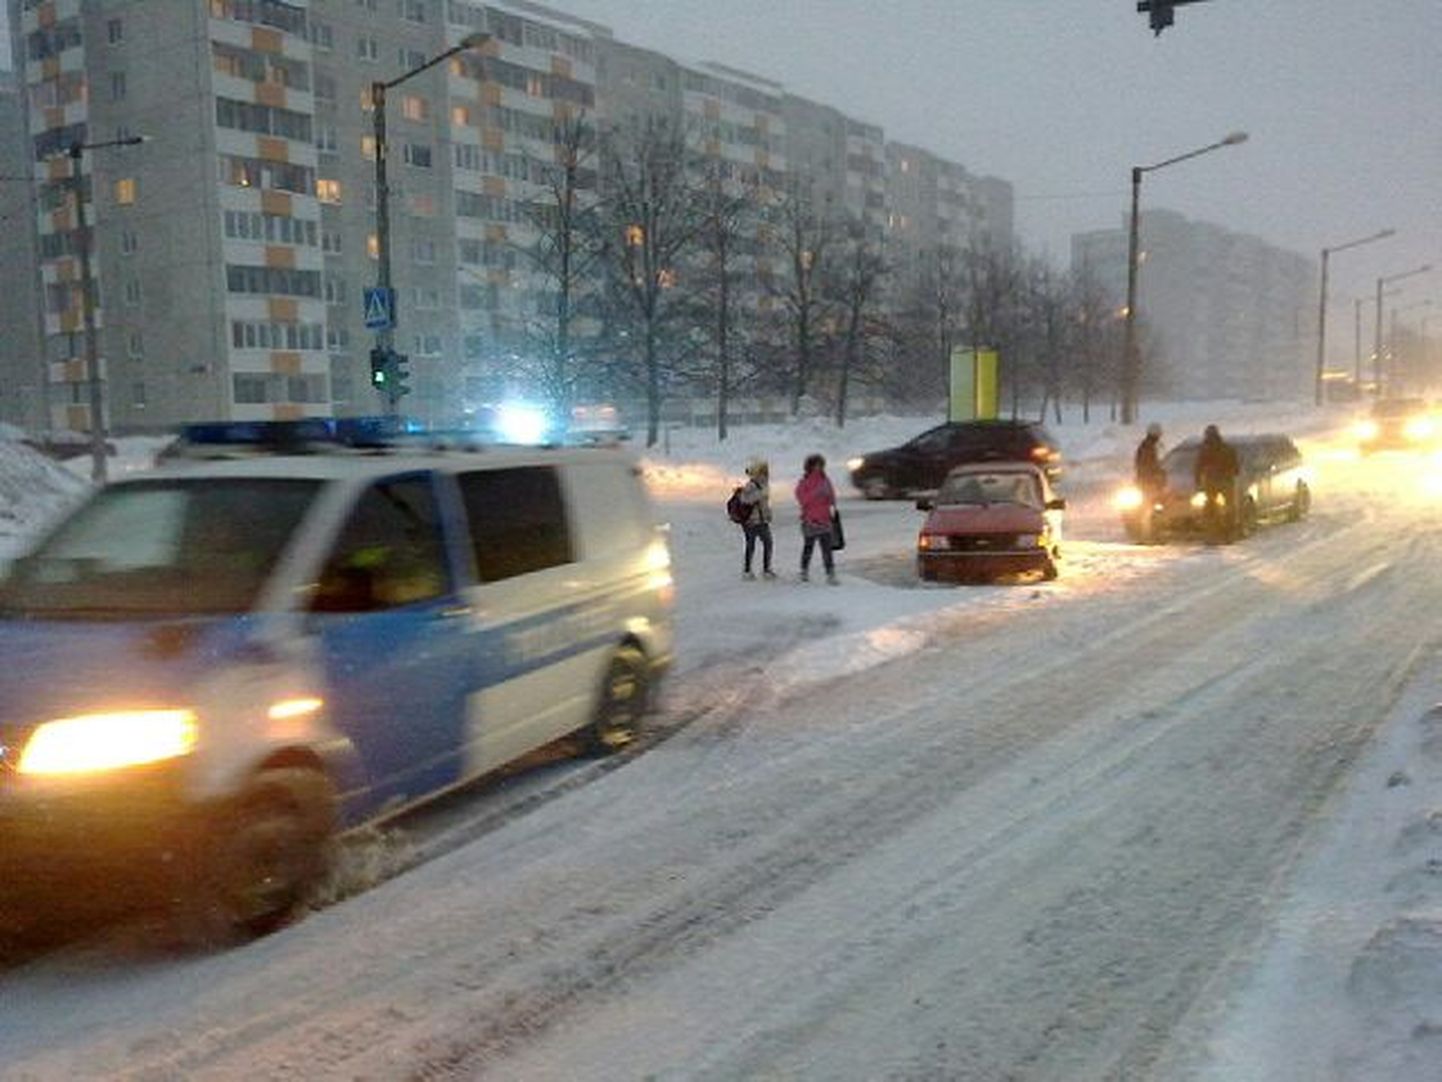 Enne kella 17 Tallinnas Smuuli ja Laagna juhtunud avariis inimesed kannatada ei saanud.